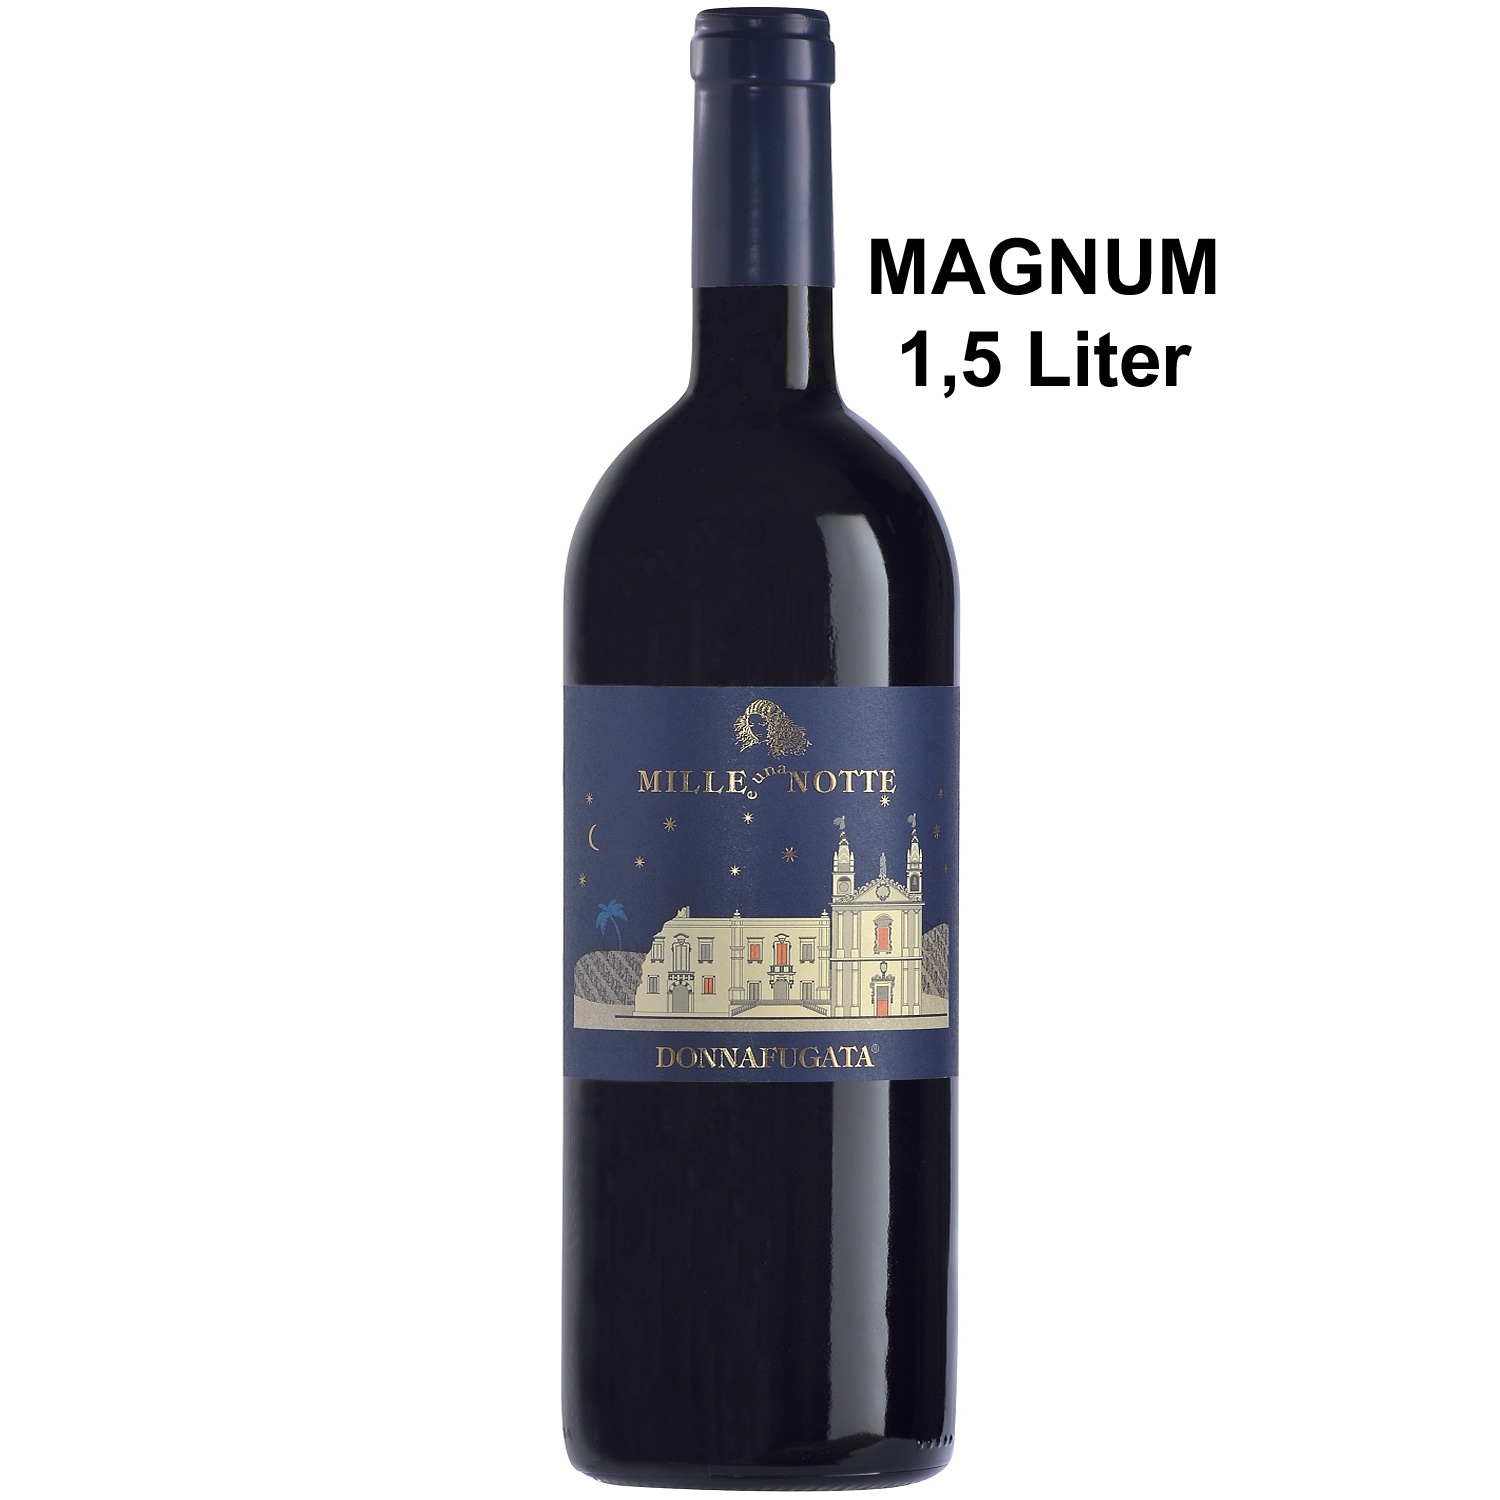 Italienischer Rotwein Mille e Una Notte 2003 Magnum Donnafugata 